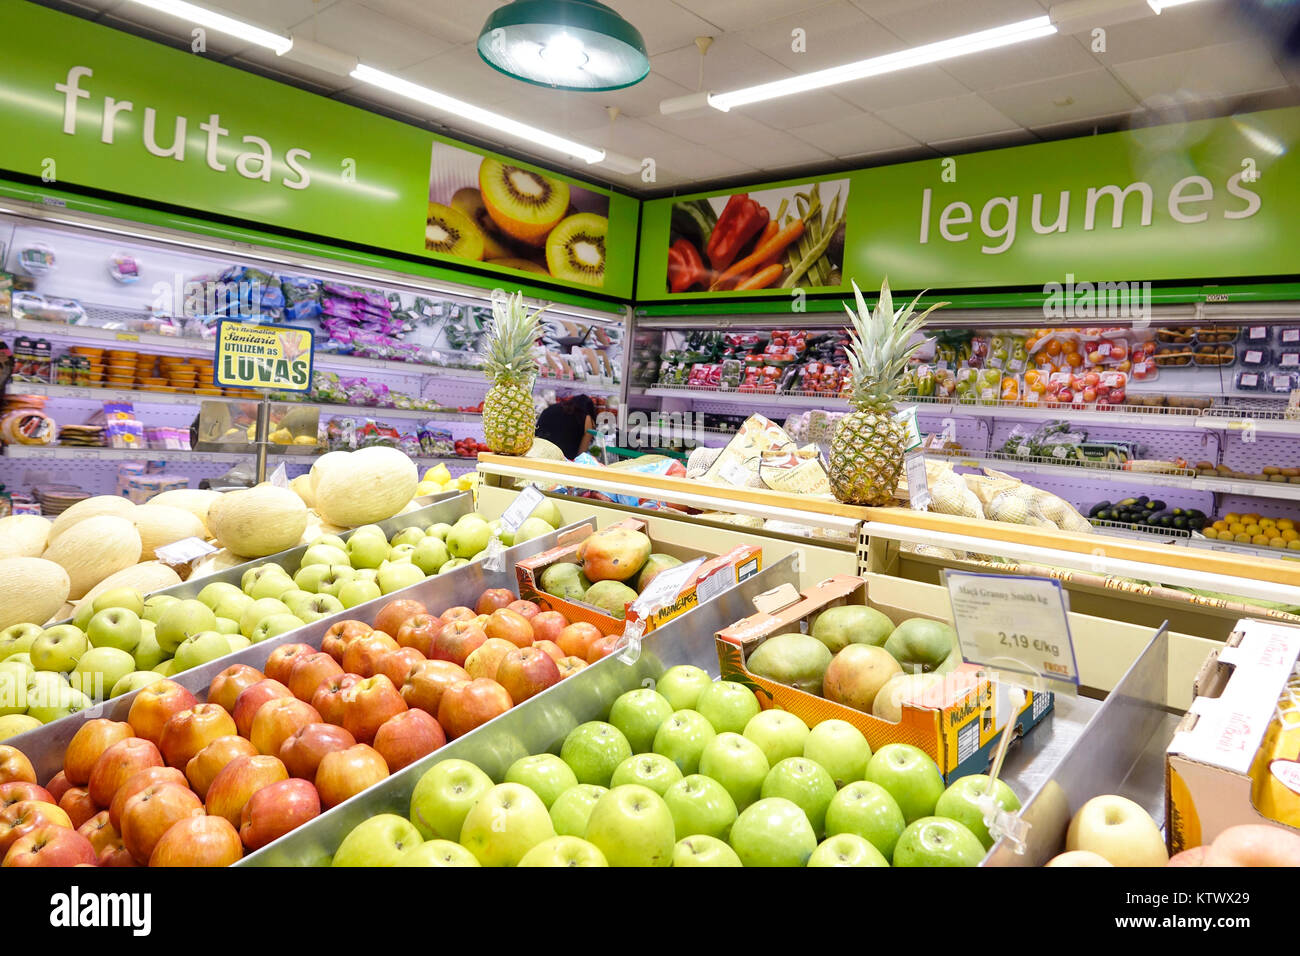 Porto Portogallo,Supermercado Froiz,negozio di alimentari,supermercato,insegna,portoghese,frutta,verdura,legue,mele,ispanici,immigrati immigrati,portoghese,P Foto Stock